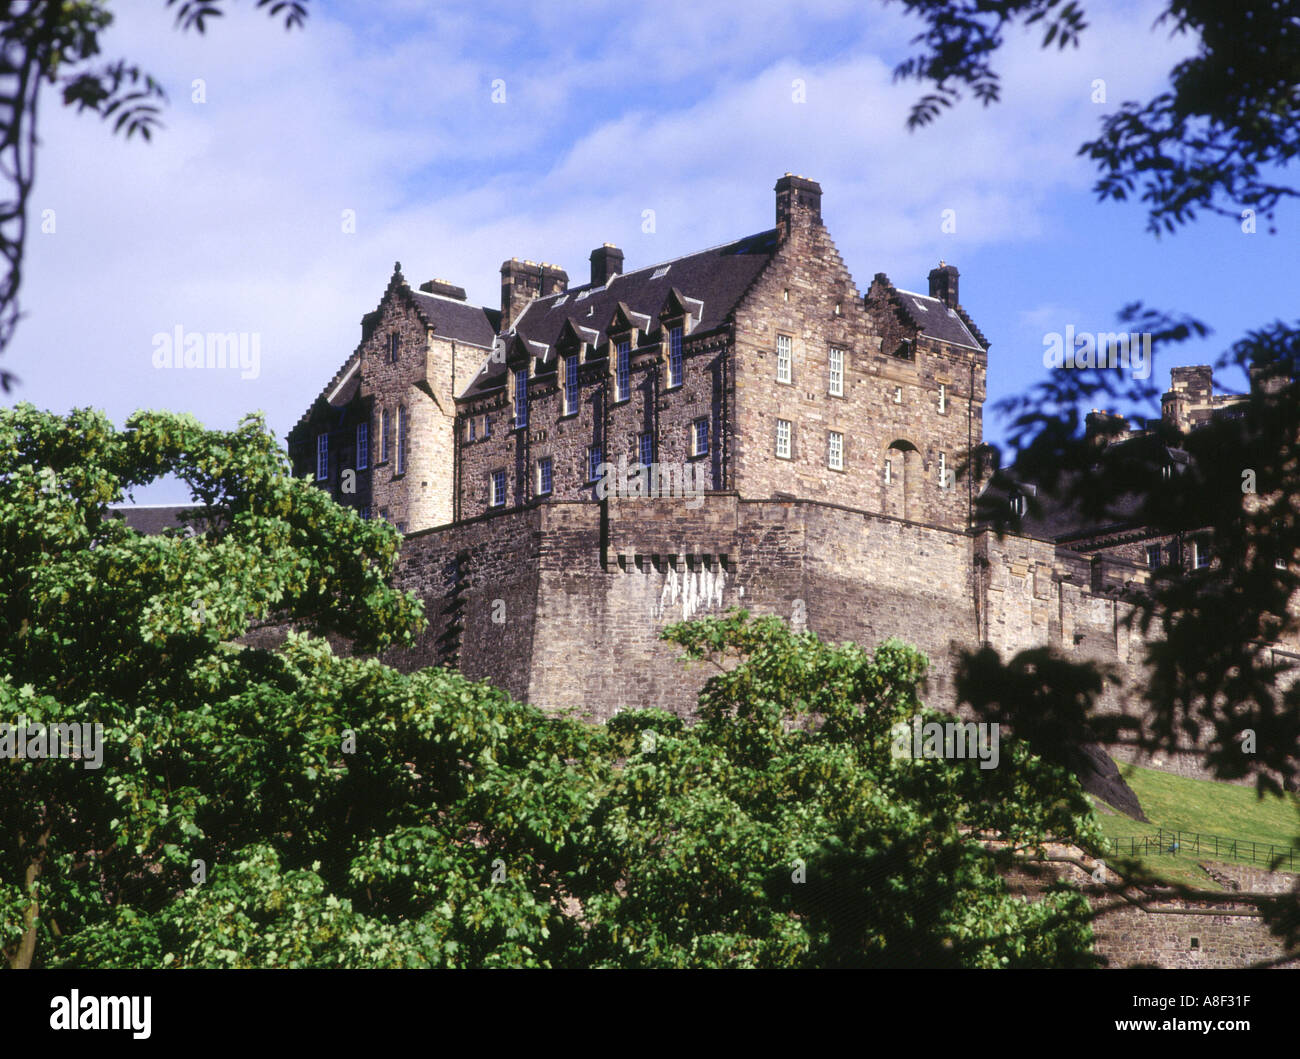 dh EDINBURGH CASTLE EDINBURGH Schottische Burgen Schottland historisches Touristensymbol berühmte Schlösser Wahrzeichen Wahrzeichen der britischen Geschichte Stockfoto